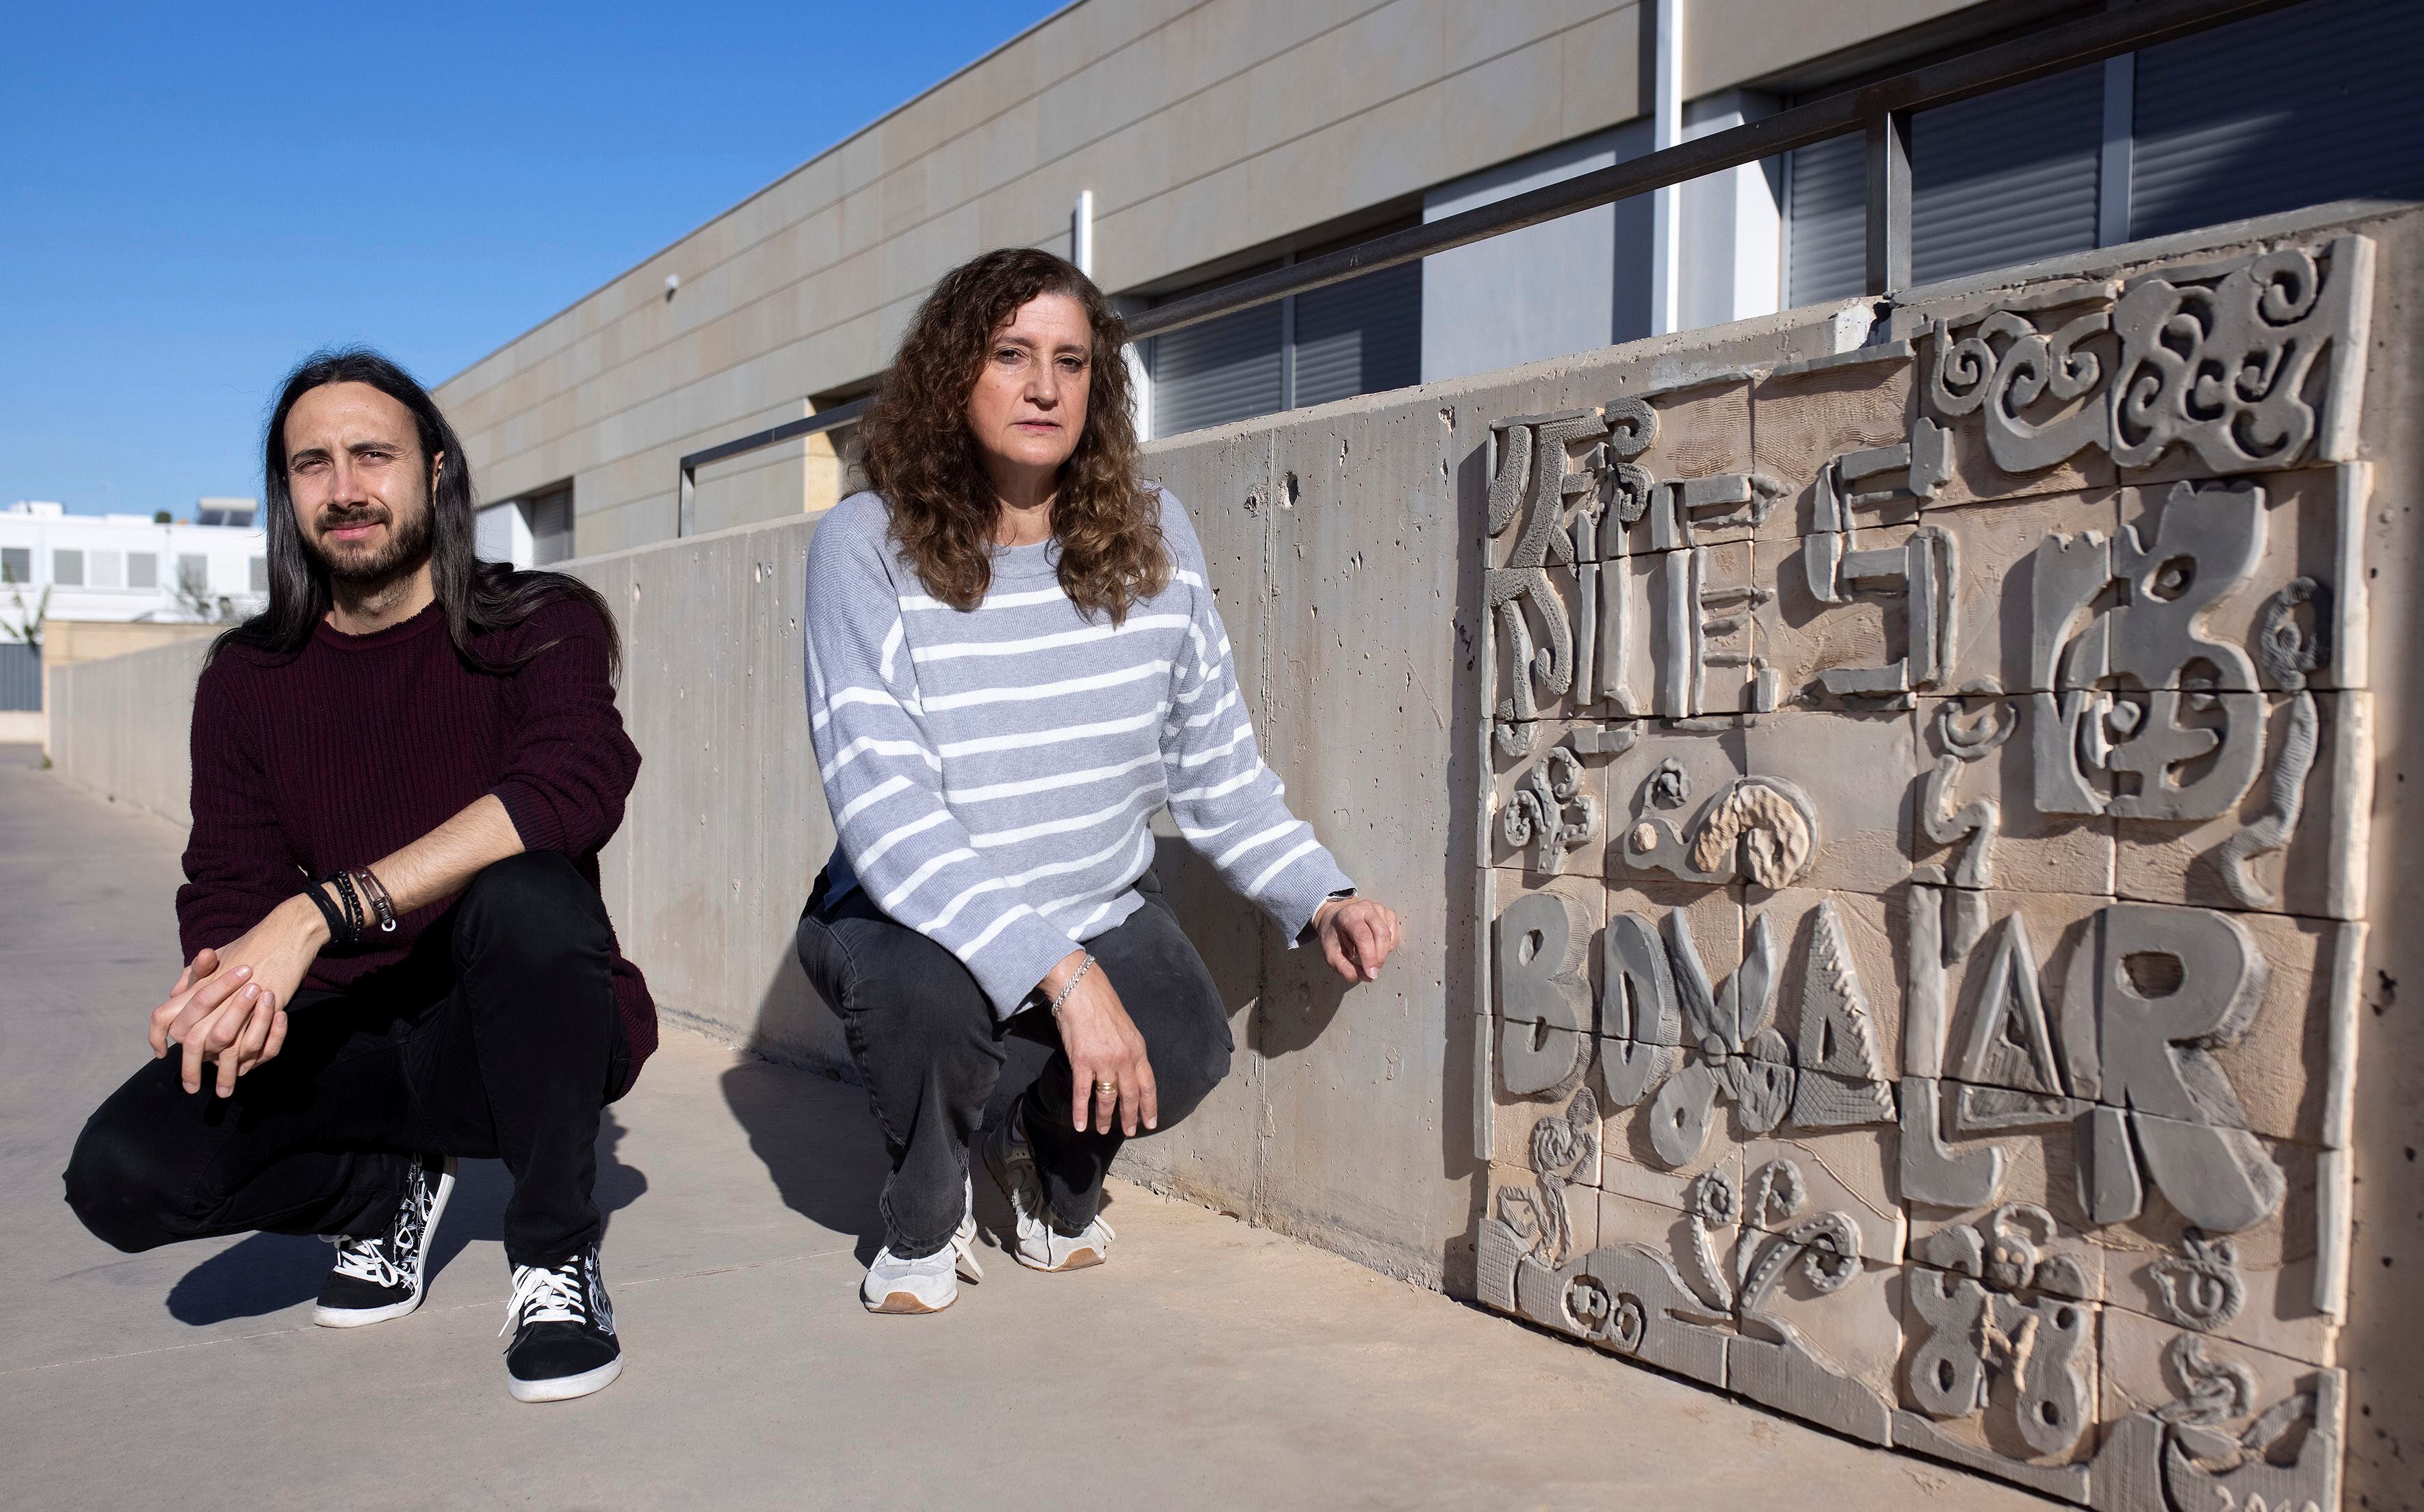  Zarach Llach y Marisa Fernández, dan clase de secundaria en el instituto público Bovalar de Castellón.